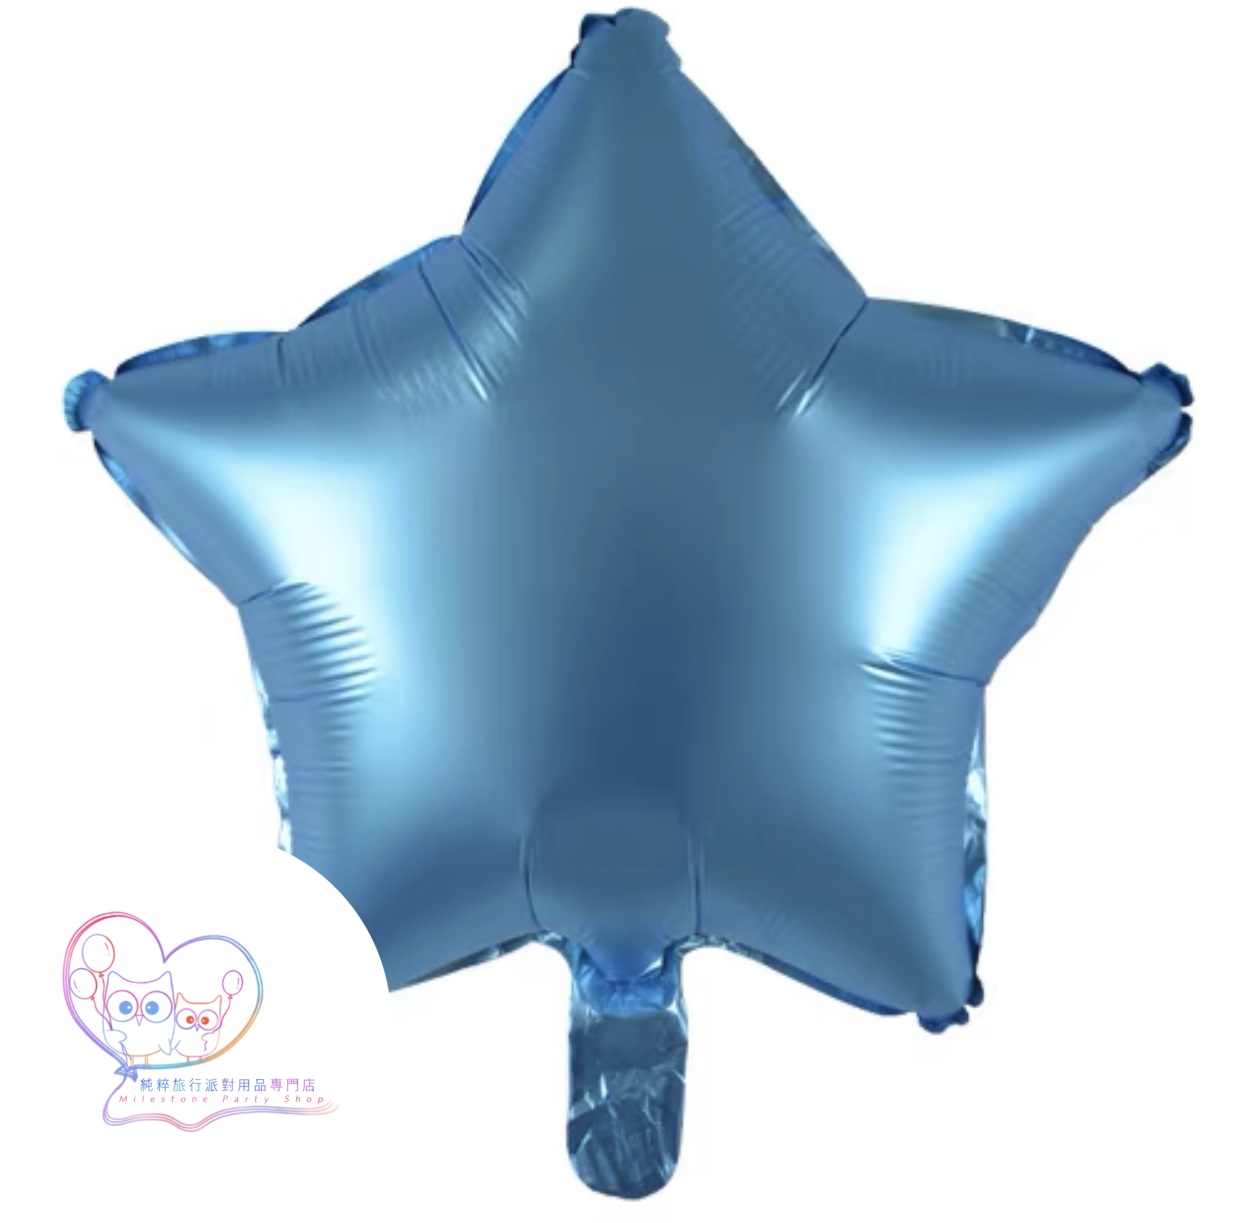 18吋星星鋁膜氣球 (磨砂淺藍色) 18SM10